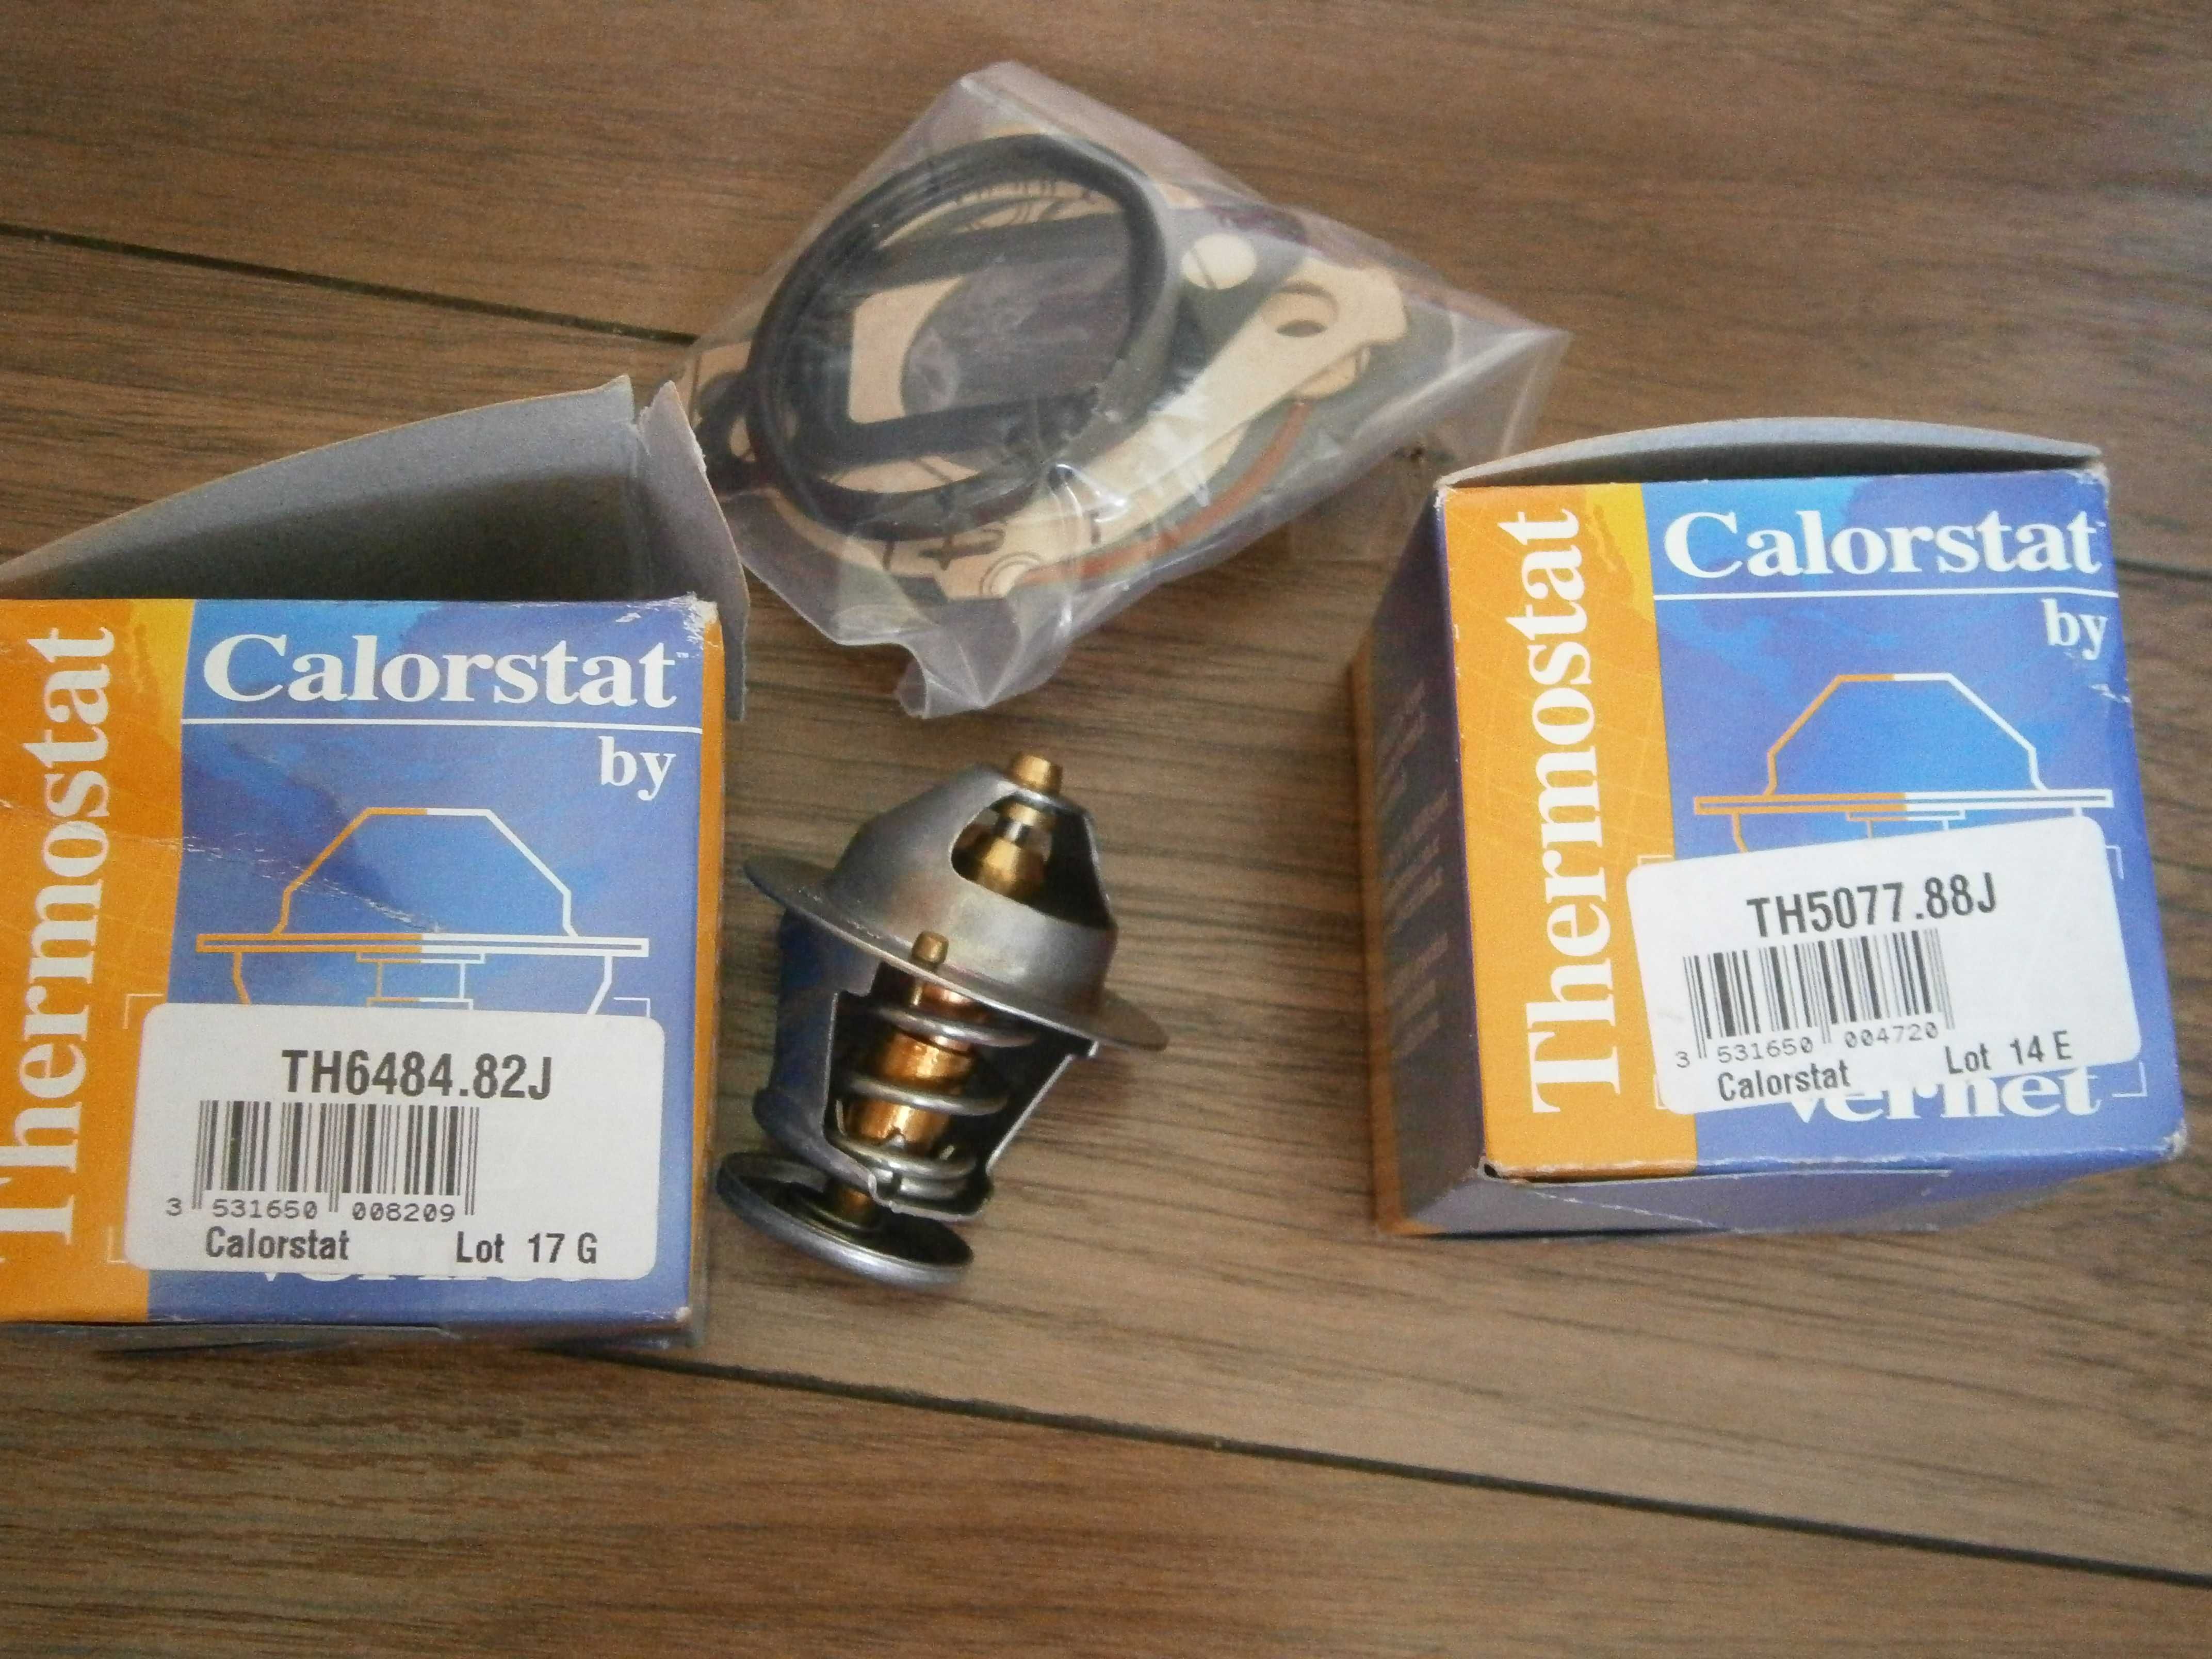 Termostat Calorstat TH6484.82J TH5077.88J Lot 17G Lot 14G thermostat